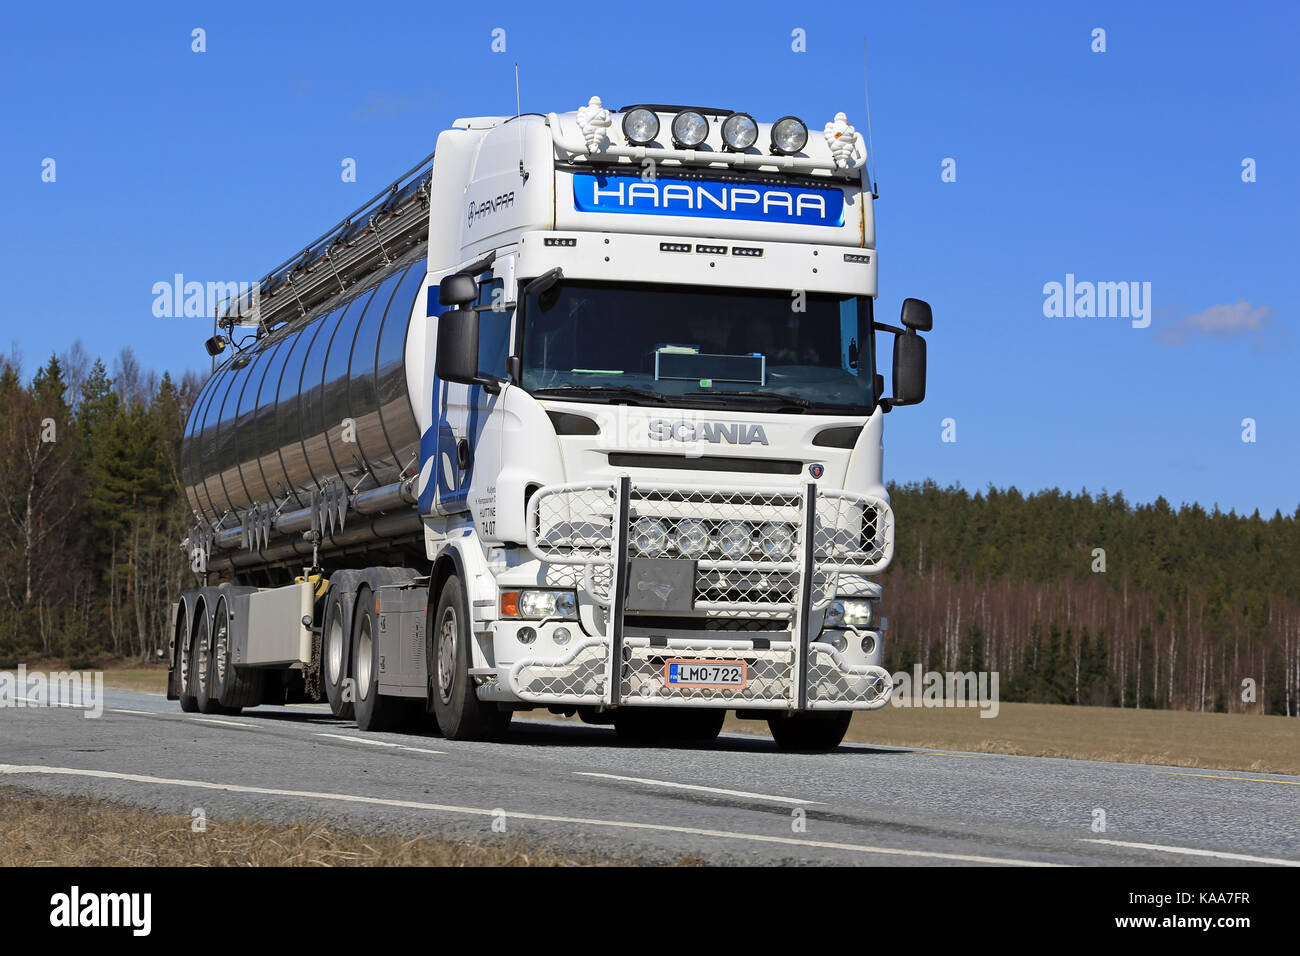 Jokioinen, Finlande - mai 1, 2017 : blanc personnalisé semi scania tank truck de kuljetus h kemppainen avec bull bar et éclairage accessoires pour haanpaa Banque D'Images